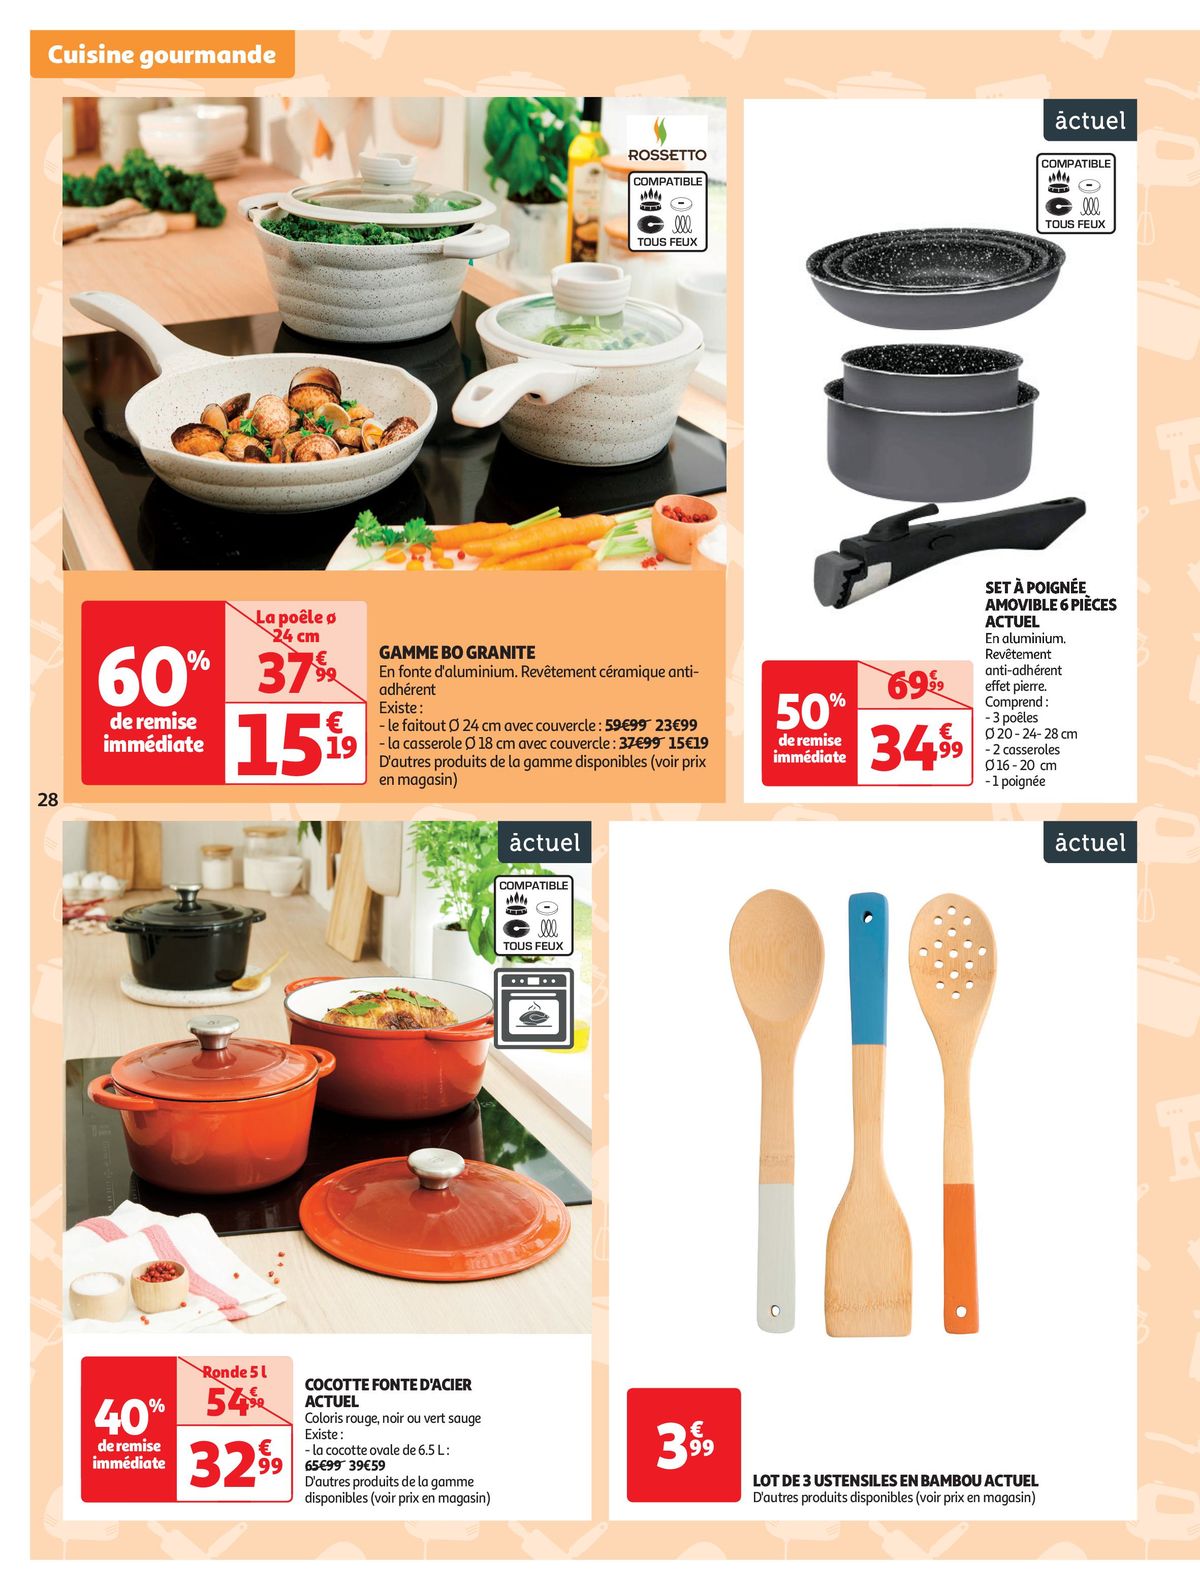 Catalogue Spécial Cuisine Gourmane dans votre supermarché, page 00028